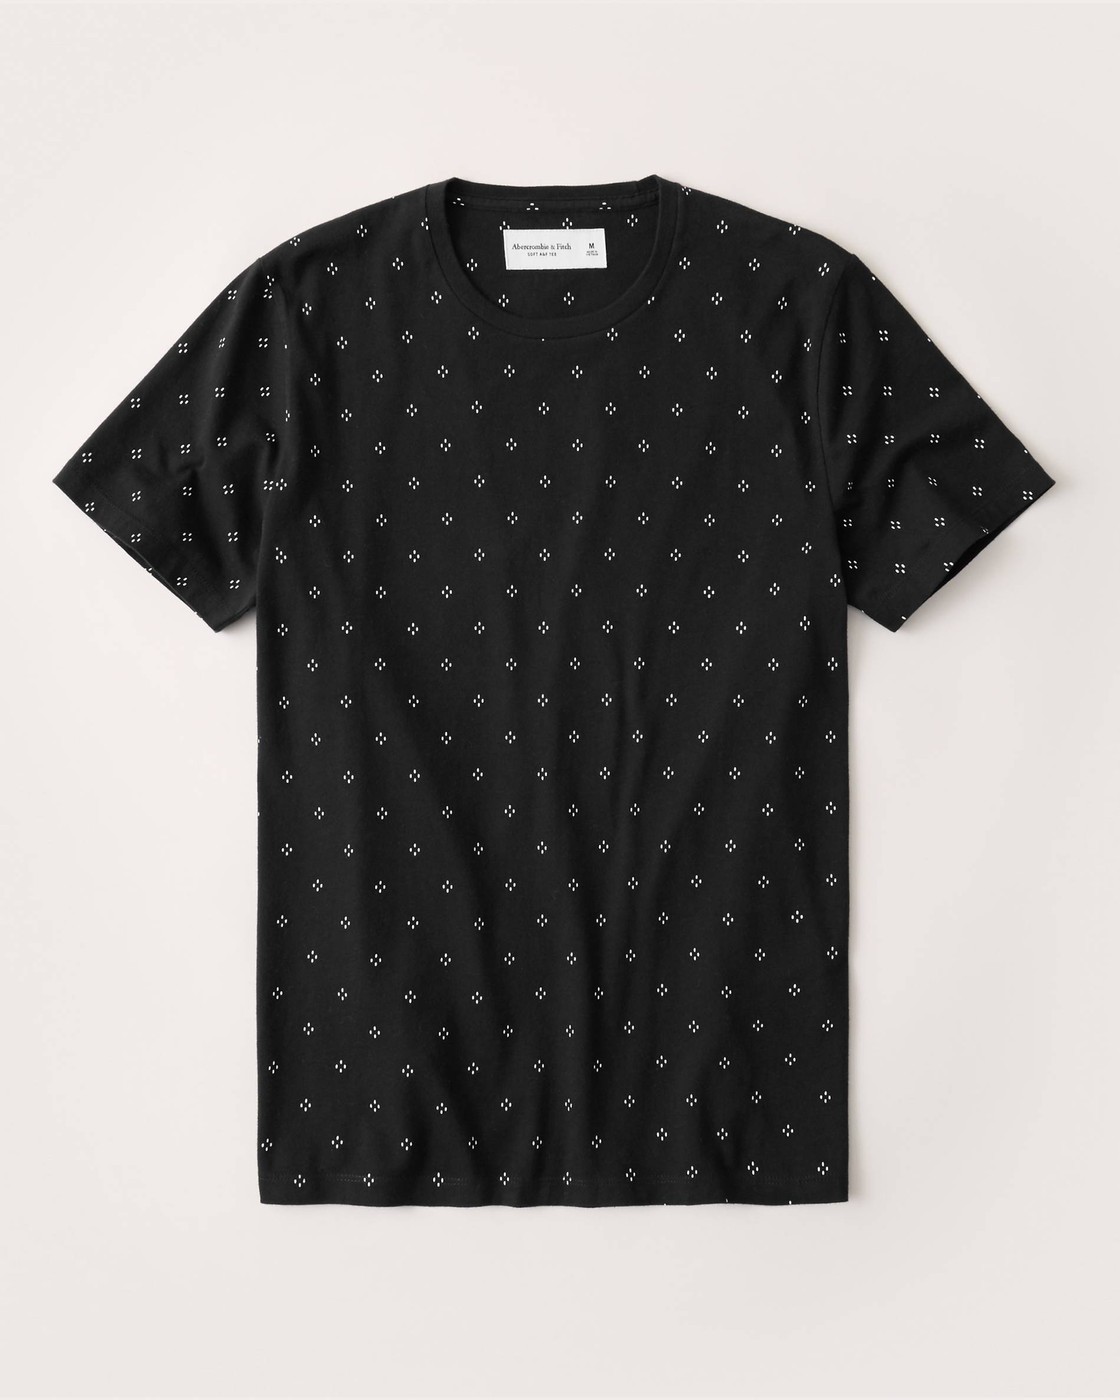 Черная футболка - мужская футболка Abercrombie & Fitch, L, L